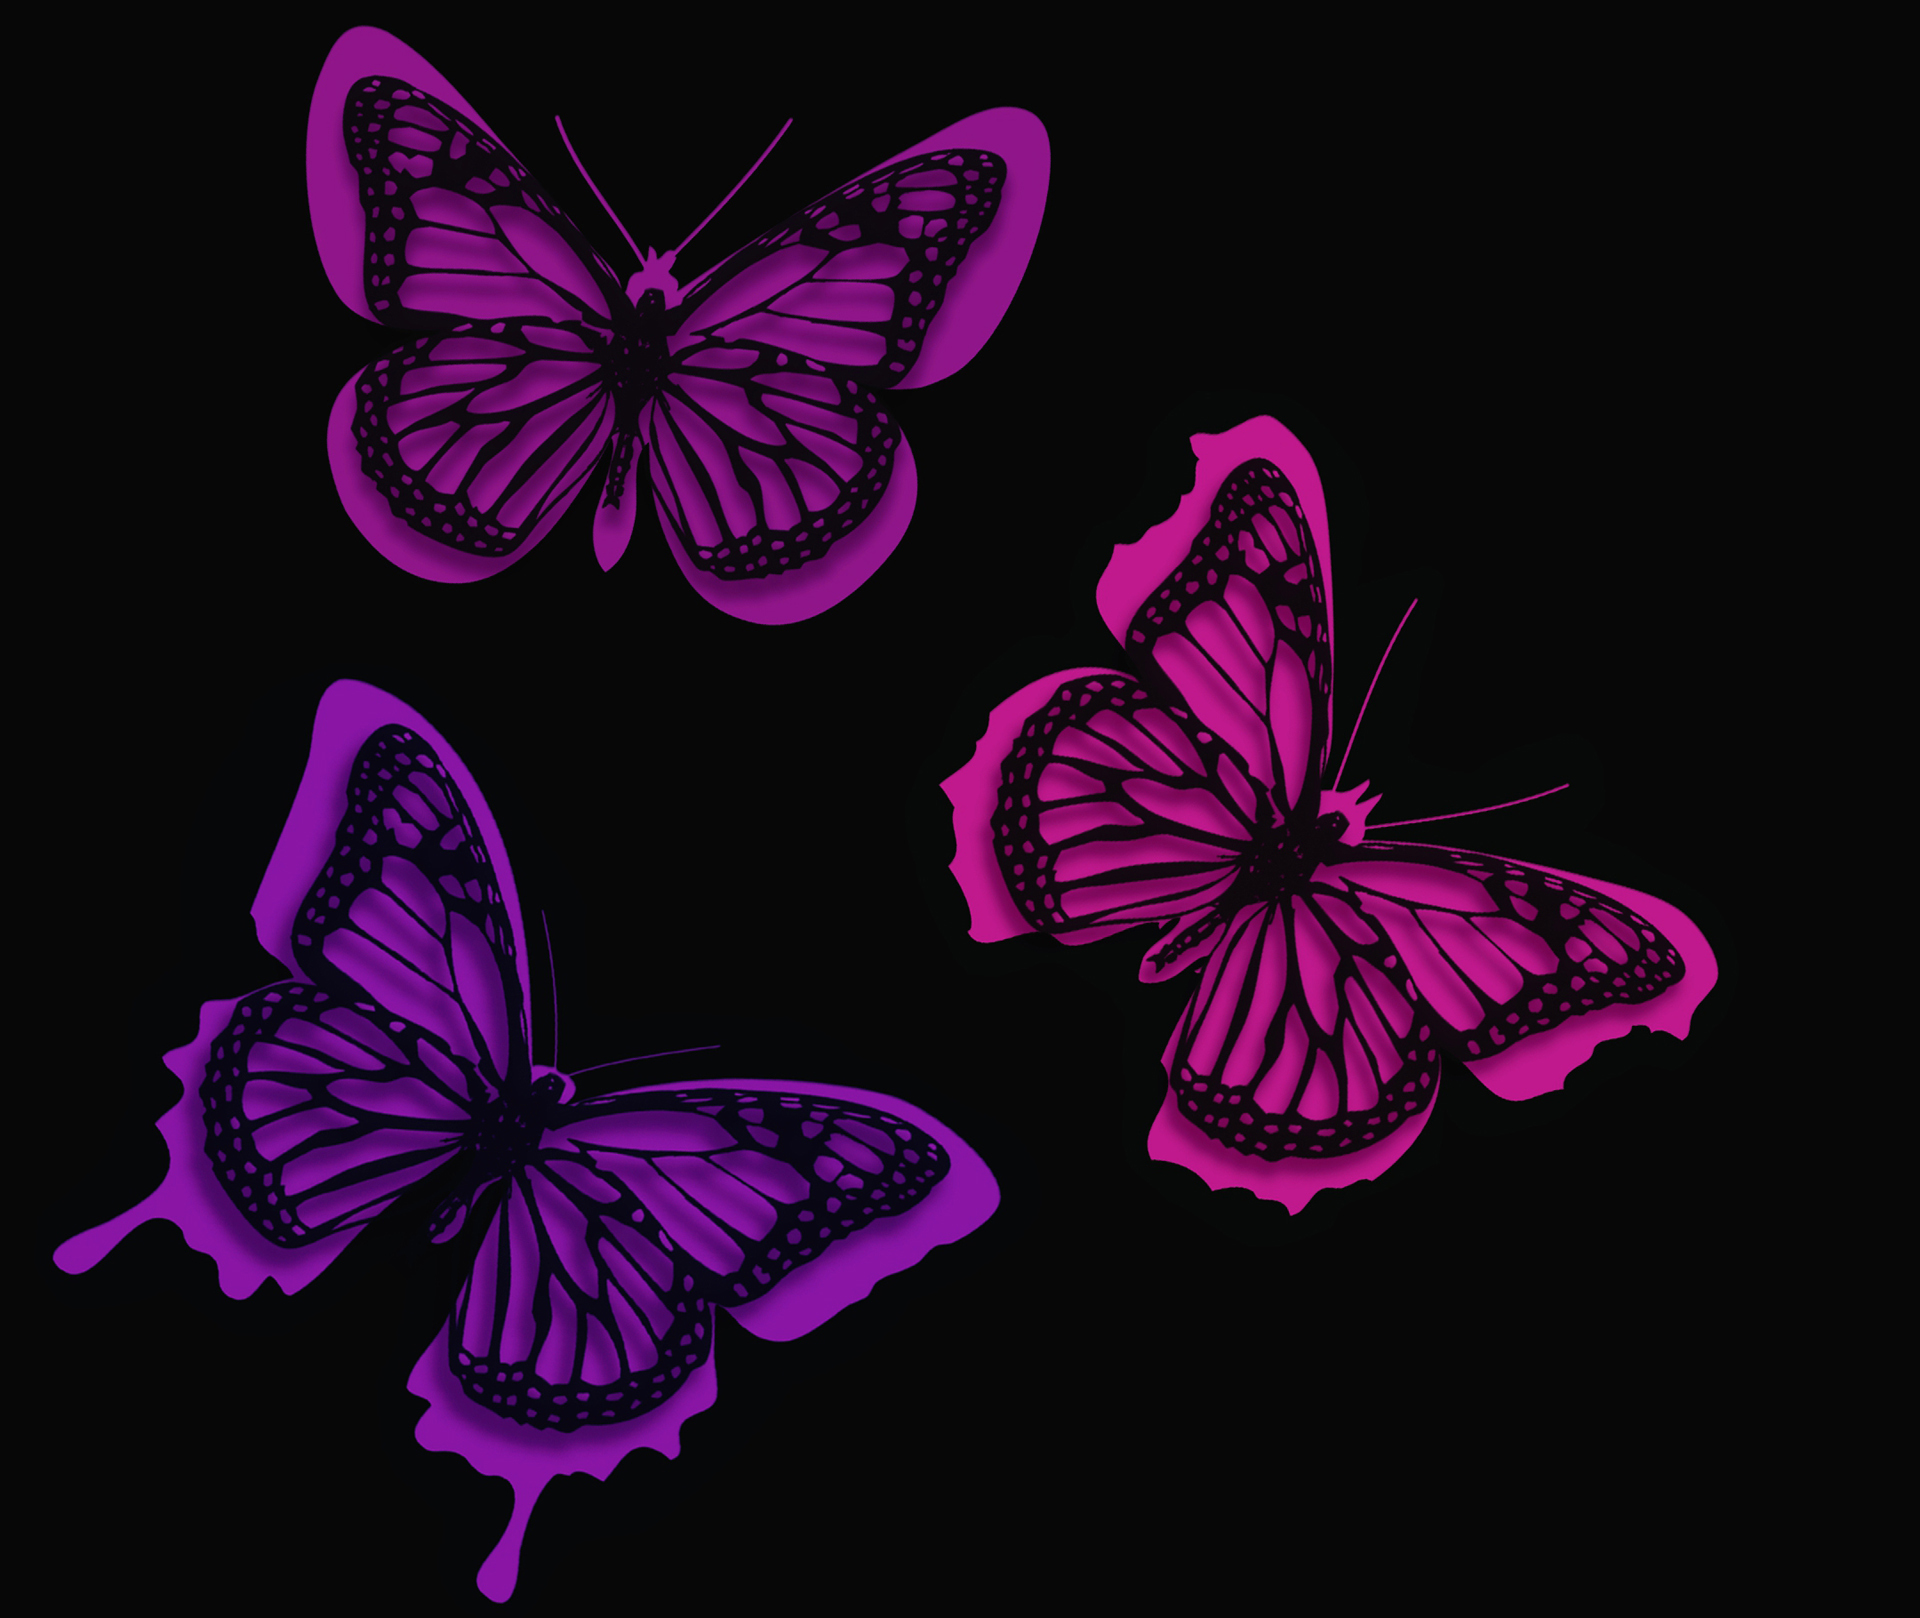 Pink Butterflies Artistic - Pink Neon Butterfly , HD Wallpaper & Backgrounds